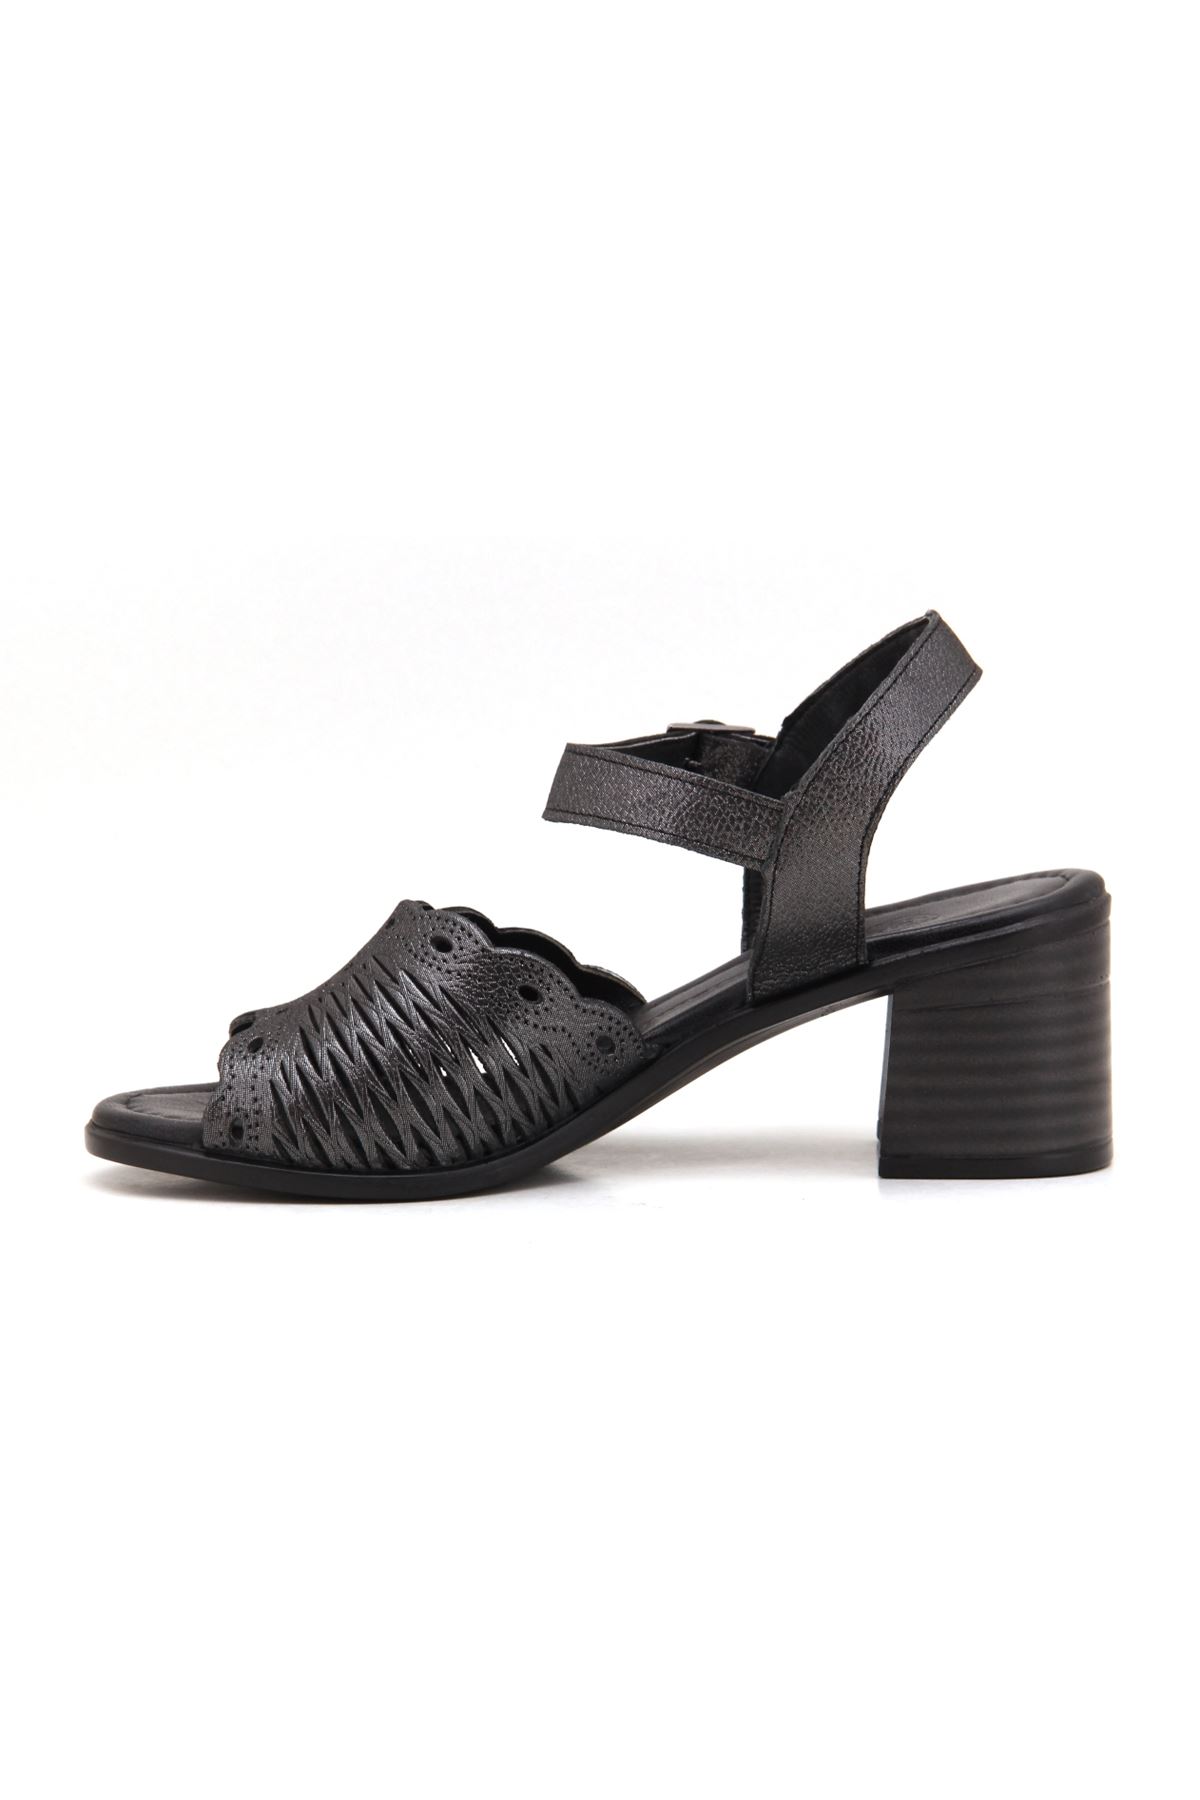 Mammamia D22YS-1035 Hakiki Deri Kadın Sandalet - Siyah Çelik